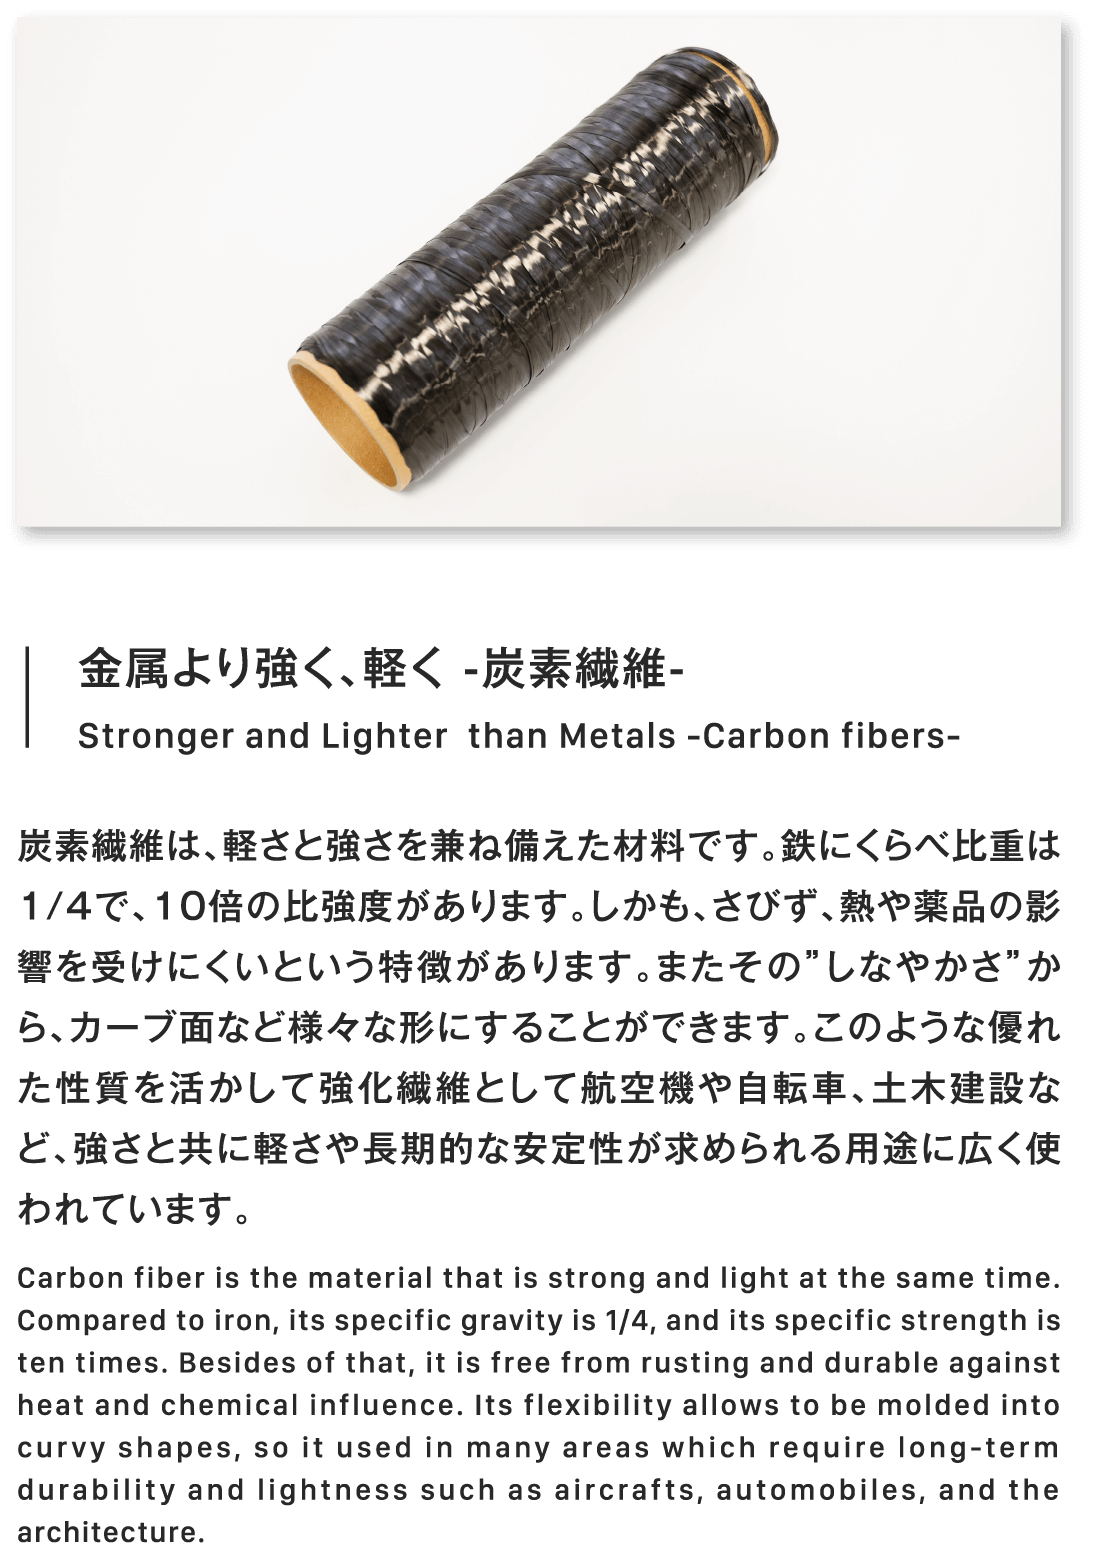 金属より強く、軽く -炭素繊維-Stronger and Lighterthan Metals -Carbon fibers-炭素繊維は、軽さと強さを兼ね備えた材料です。鉄にくらべ比重は1/4で、10倍の比強度があります。しかも、さびず、熱や薬品の影響を受けにくいという特徴があります。またその”しなやかさ”から、カーブ面など様々な形にすることができます。このような優れた性質を活かして強化繊維として航空機や自転車、土木建設など、強さと共に軽さや長期的な安定性が求められる用途に広く使われています。Carbon fiber is the material that is strong and light at the same time. Compared to iron, its specific gravity is 1/4, and its specific strength is ten times. Besides of that, it is free from rusting and durable against heat and chemical influence. Its flexibility allows to be molded into curvy shapes, so it used in many areas which require long-term durability and lightness such as aircrafts, automobiles, and the architecture.